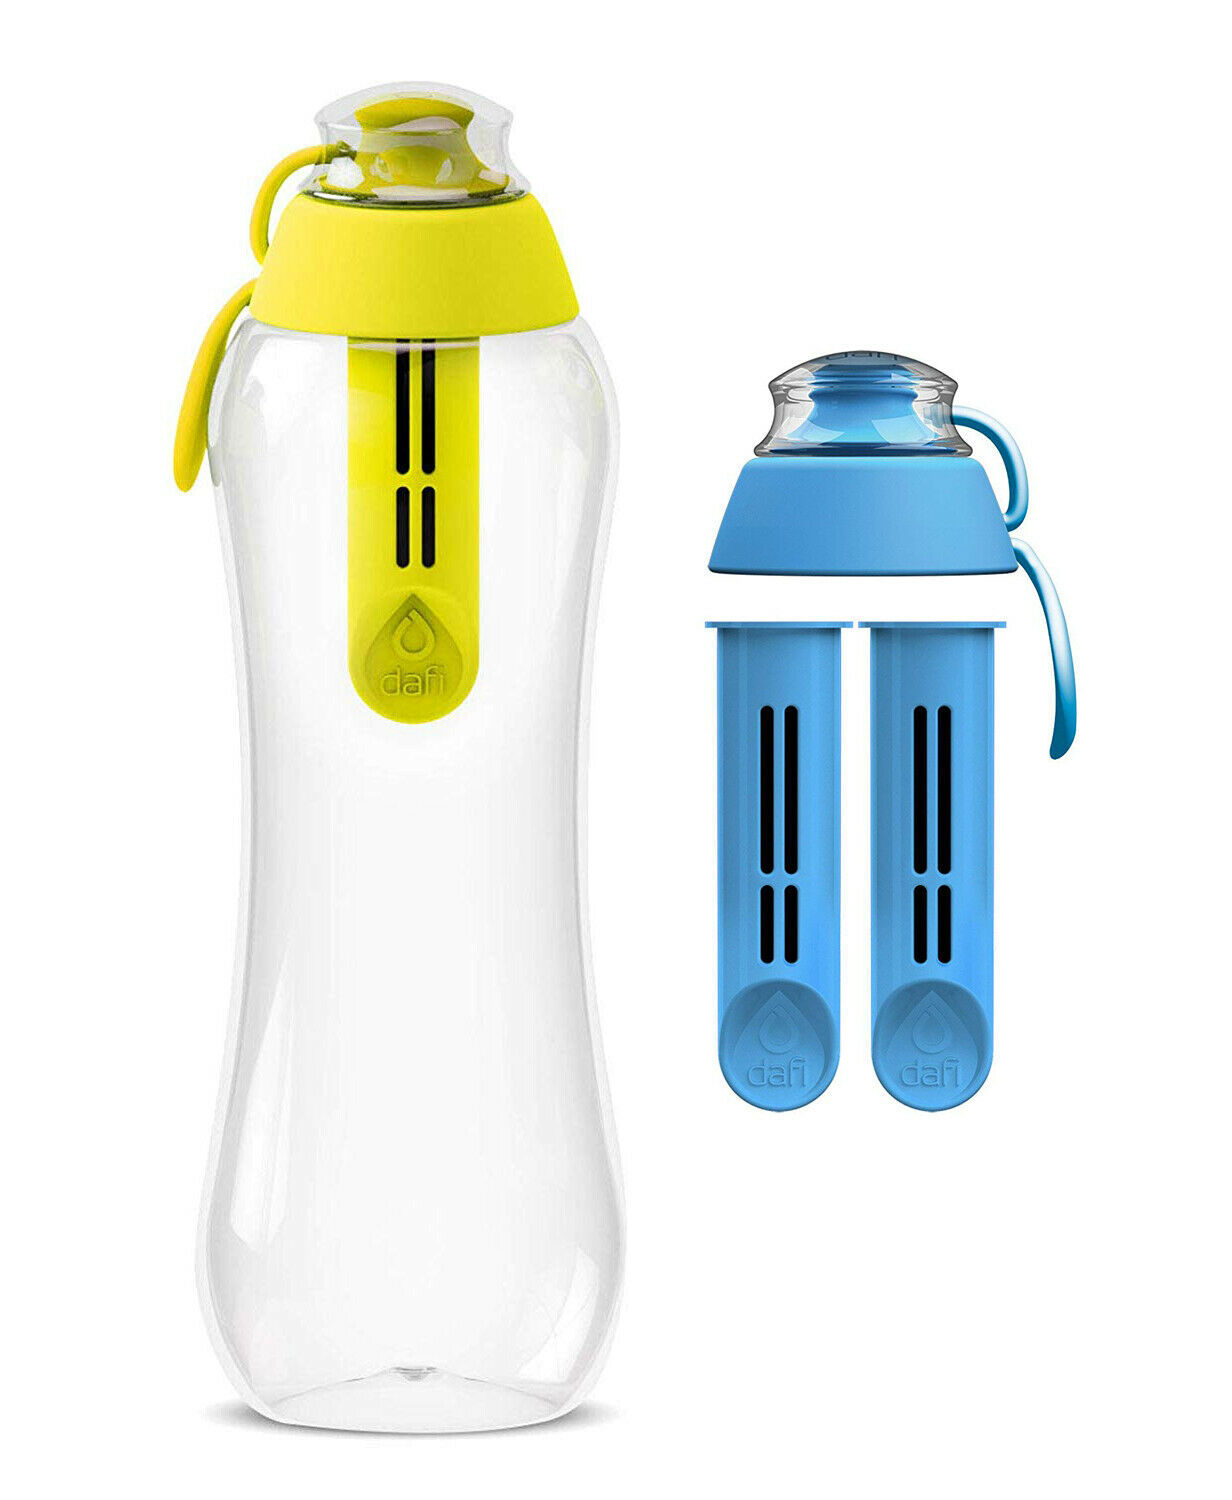 Dafi Filtering Water Bottle Yellow 17 oz + 2 Blue Filters + 1 Blue Cap BPA FREE